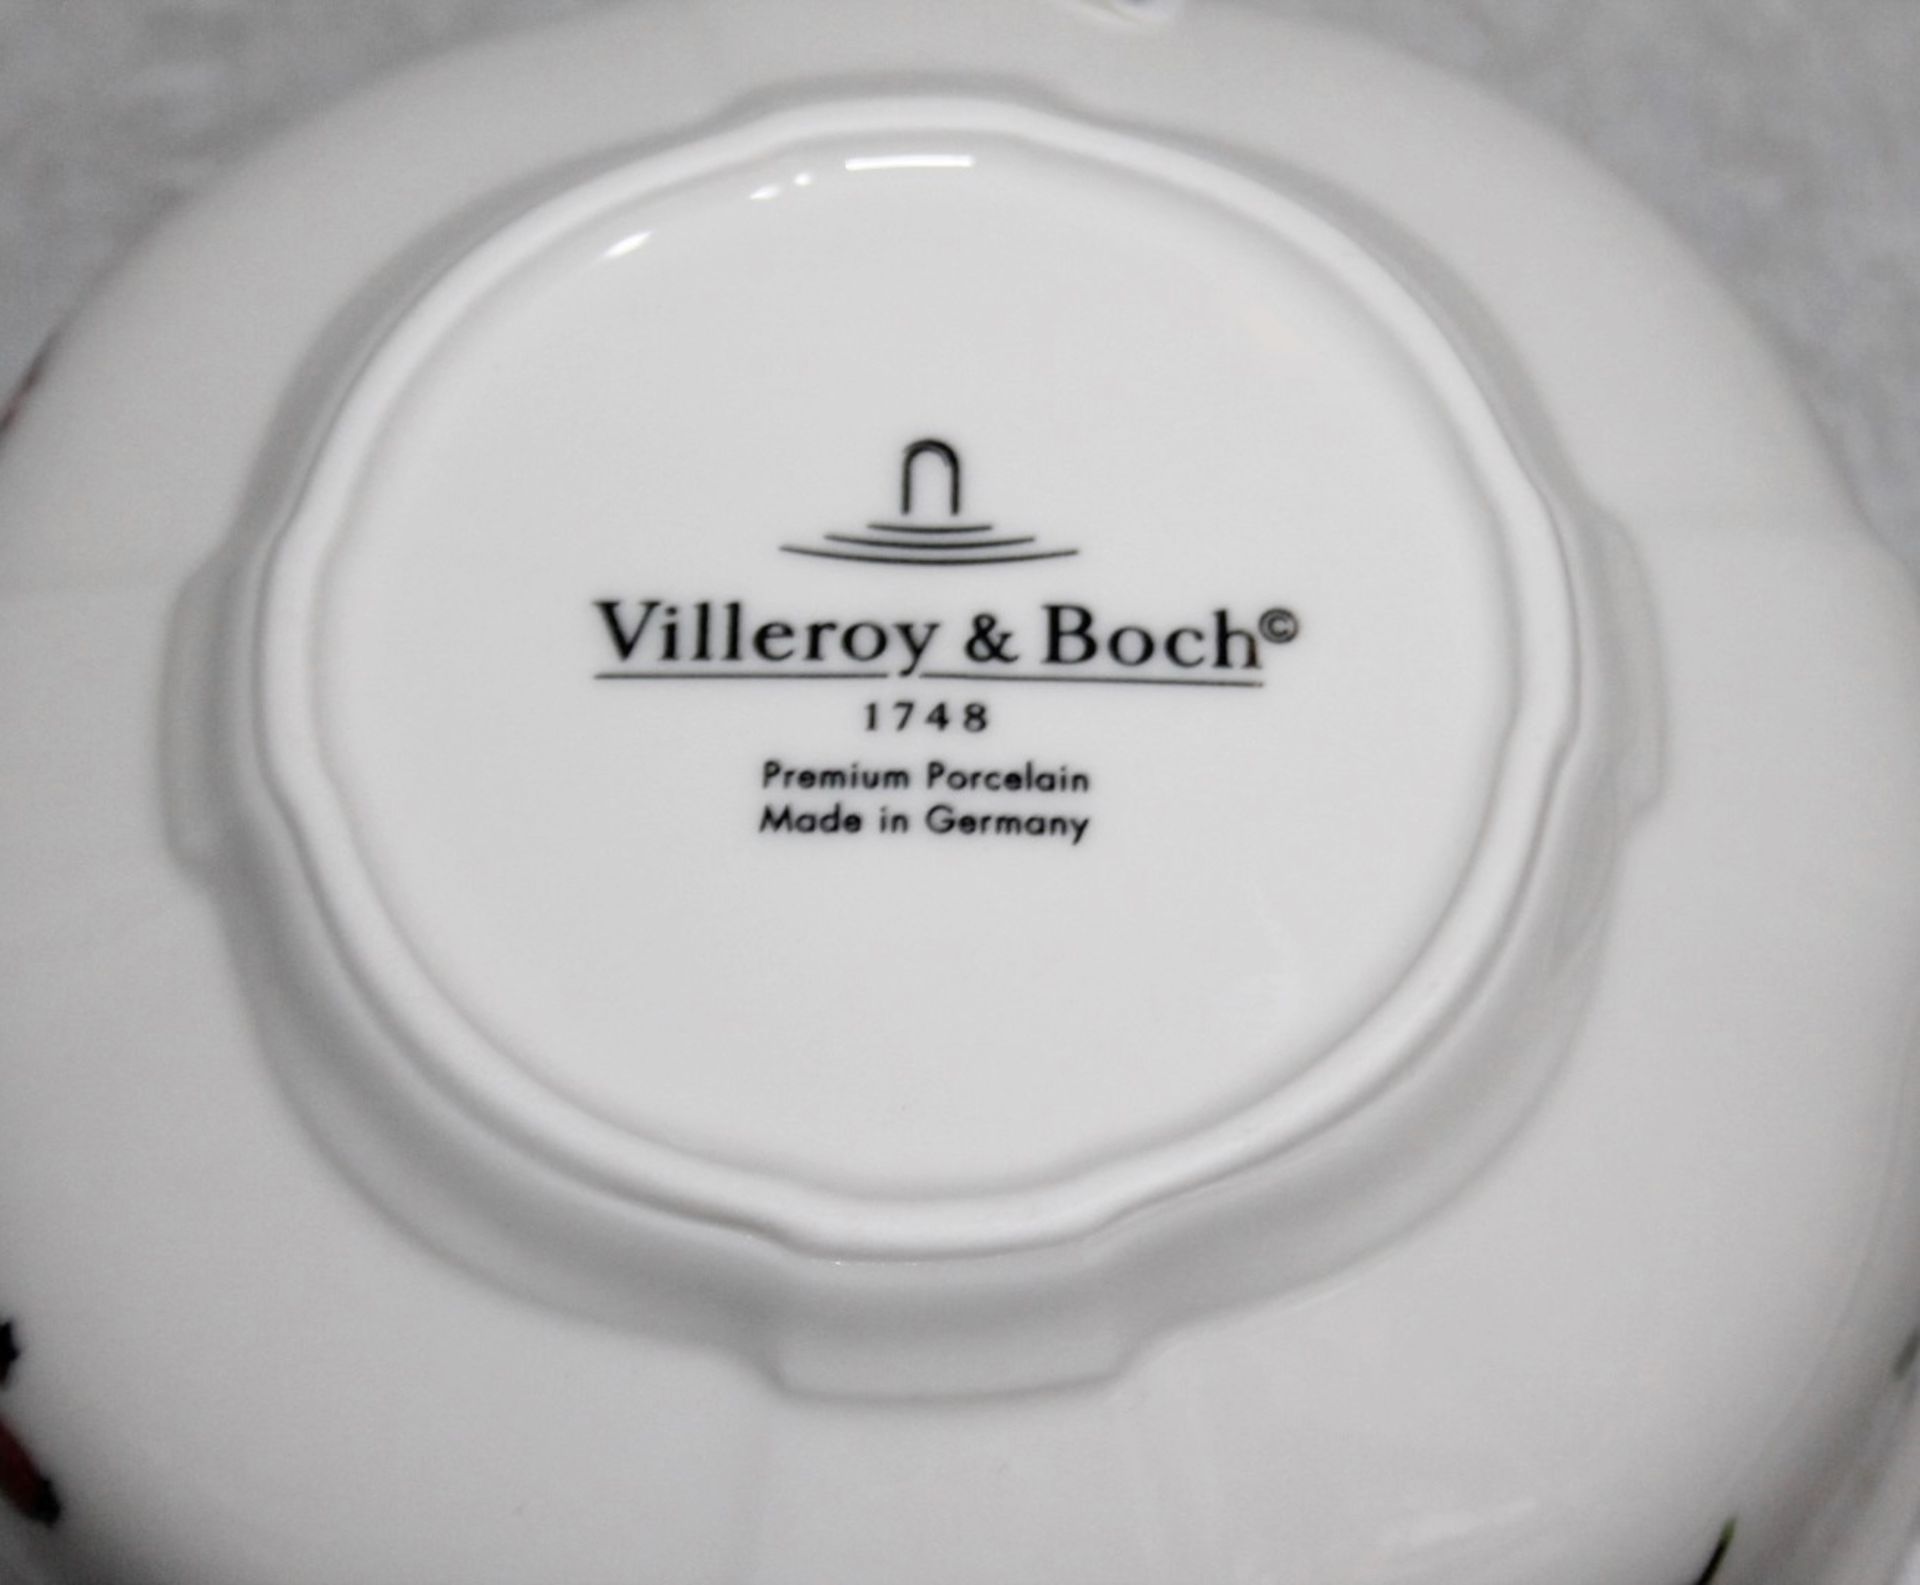 1 x VILLEROY & BOCH 'Petite Fleur' Premium Porcelain Bowl (ø15cm) - Unused Unboxed Stock - Ref: - Image 4 of 5